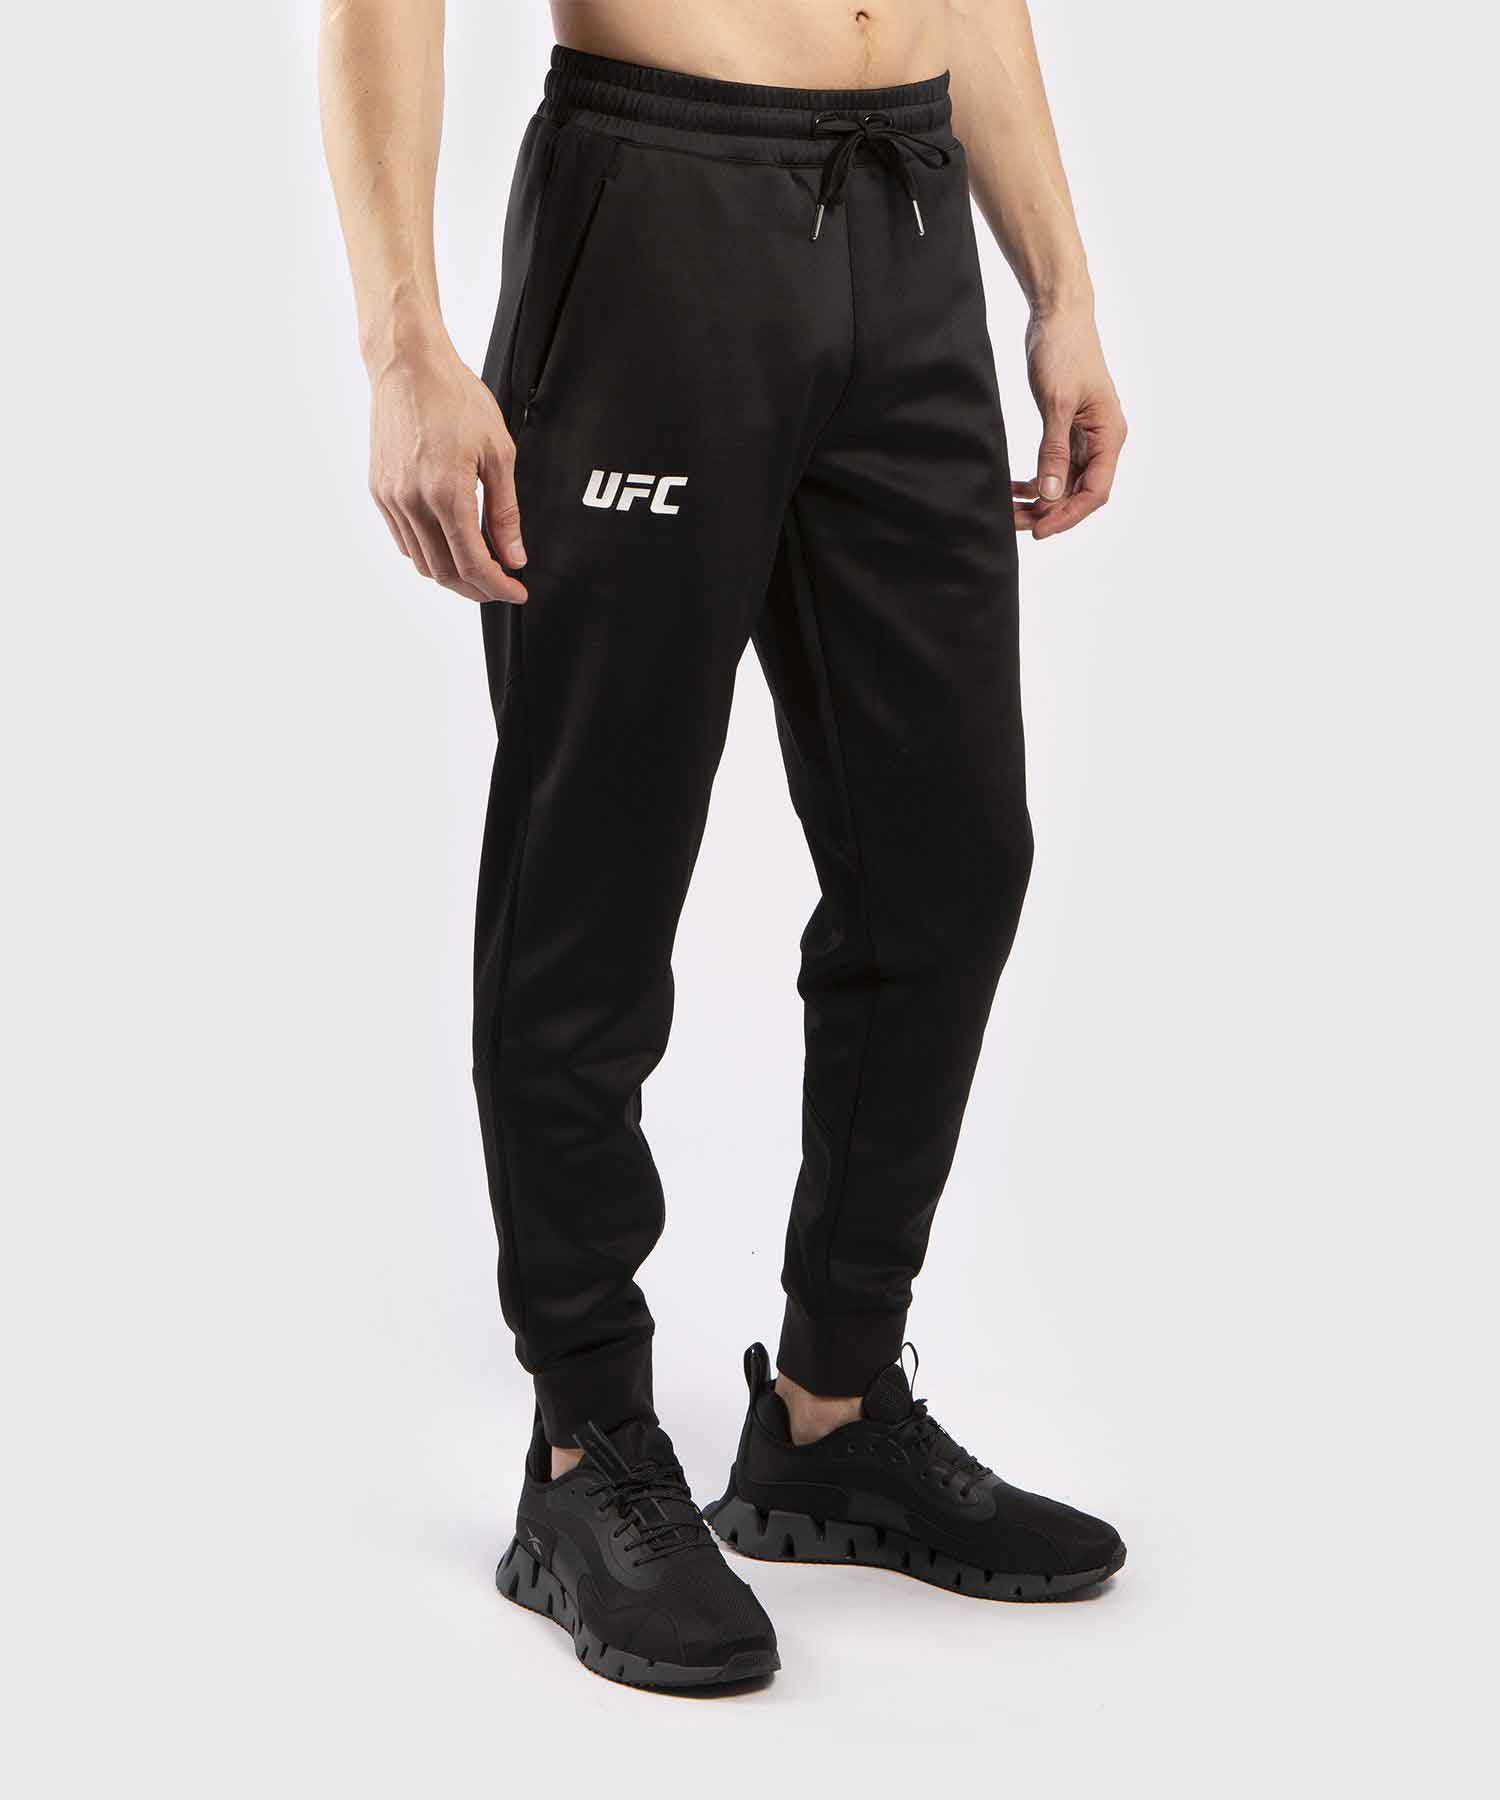 VENUM／ヴェナム　スウェットパンツ　　UFC VENUM PRO LINE MEN'S PANTS／UFC VENUM プロライン メンズ パンツ（黒）